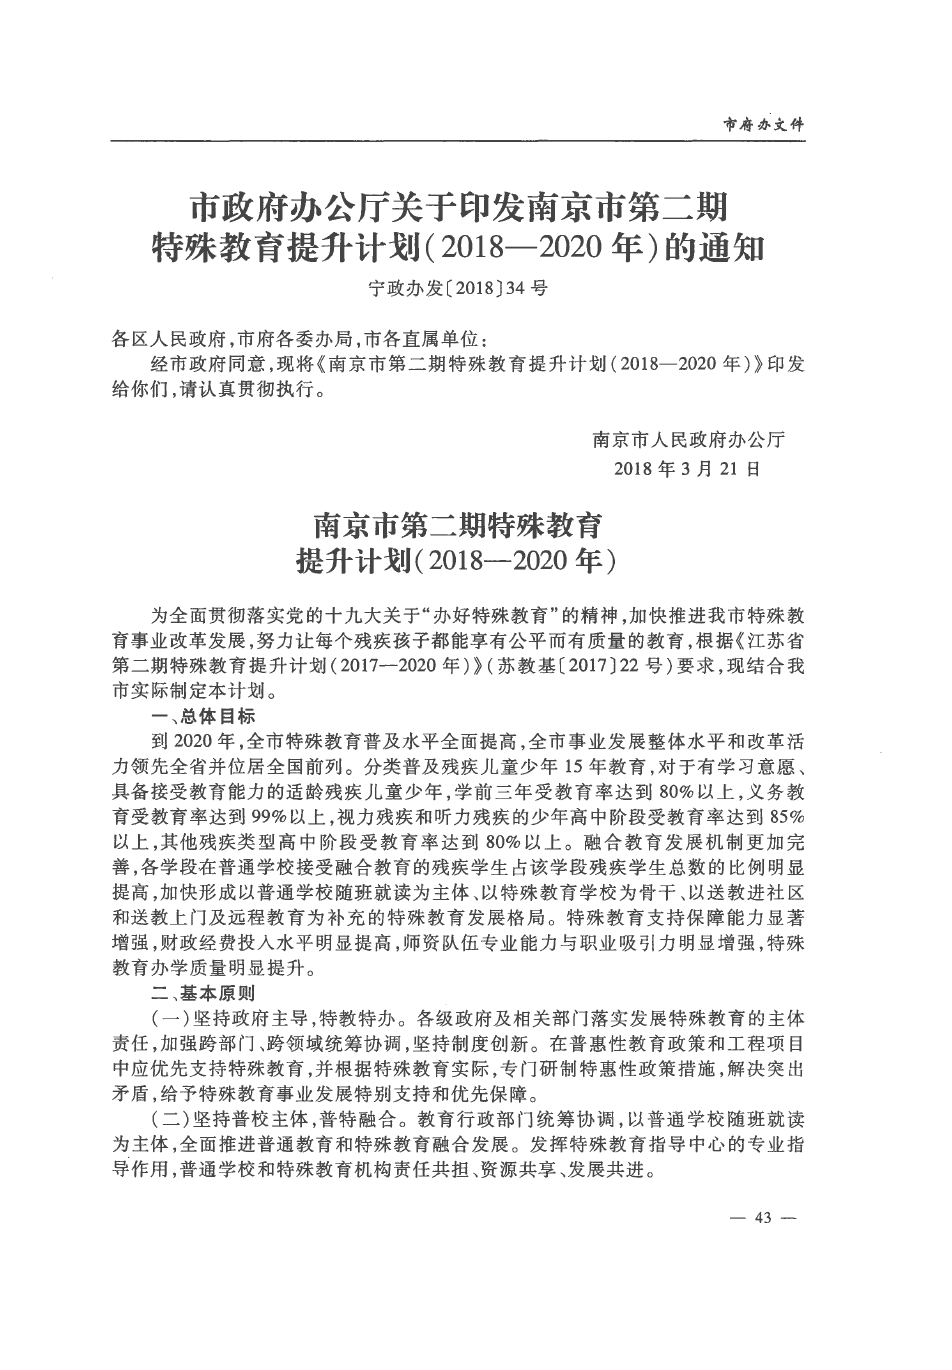 市政府办公厅关于印发南京市第二期特殊教育提升计划(2018—2020年)的通知